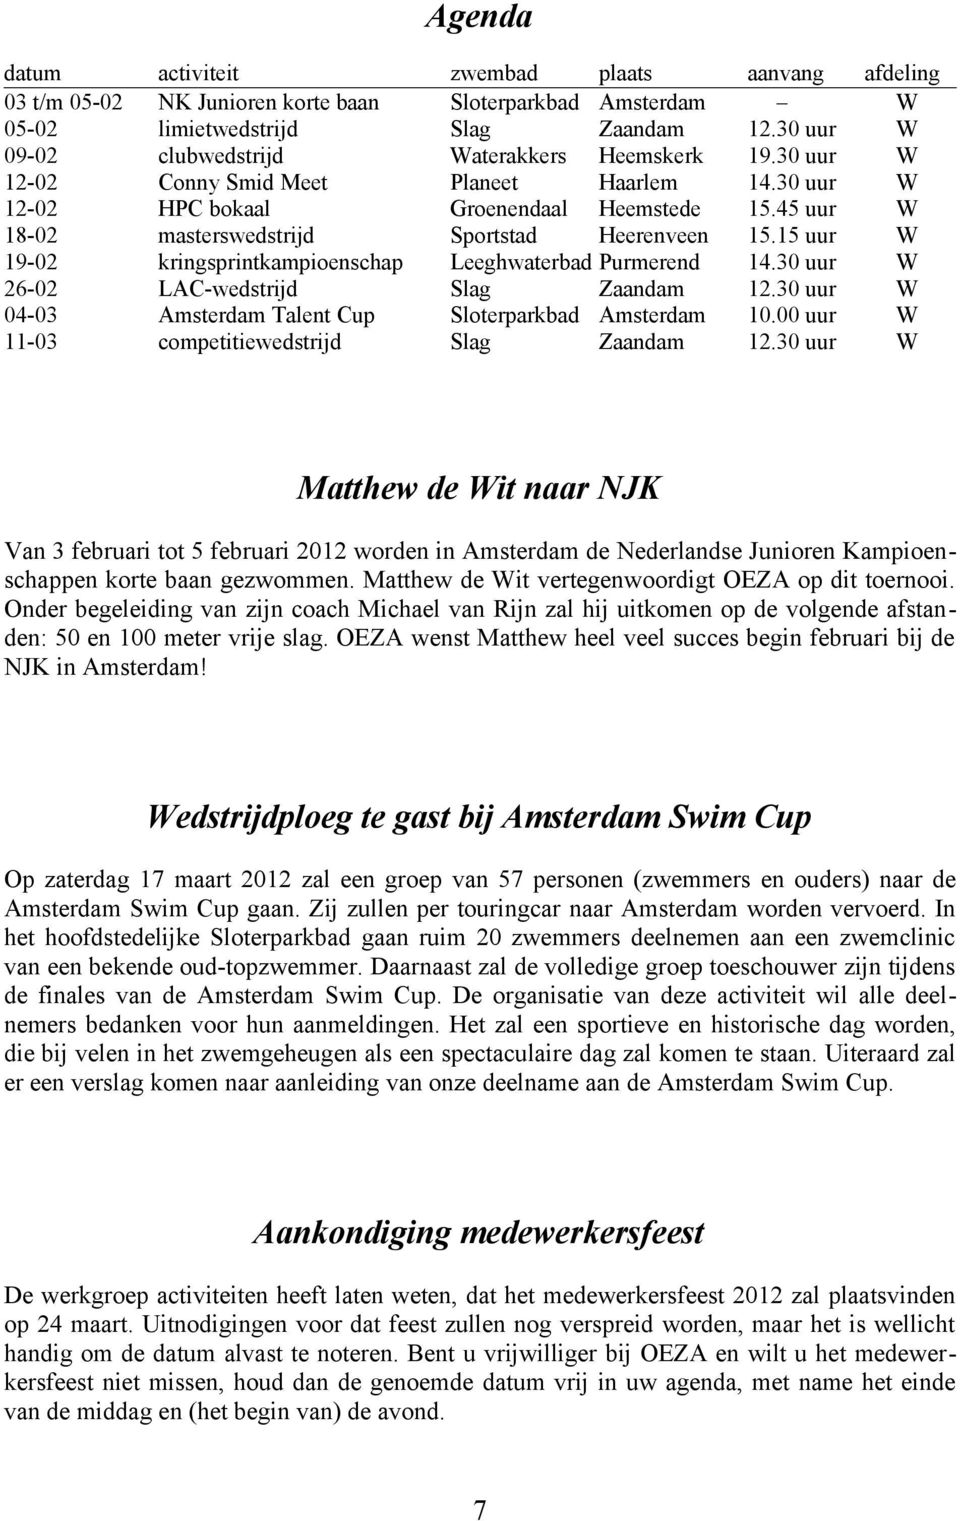 45 uur W 18-02 masterswedstrijd Sportstad Heerenveen 15.15 uur W 19-02 kringsprintkampioenschap Leeghwaterbad Purmerend 14.30 uur W 26-02 LAC-wedstrijd Slag Zaandam 12.